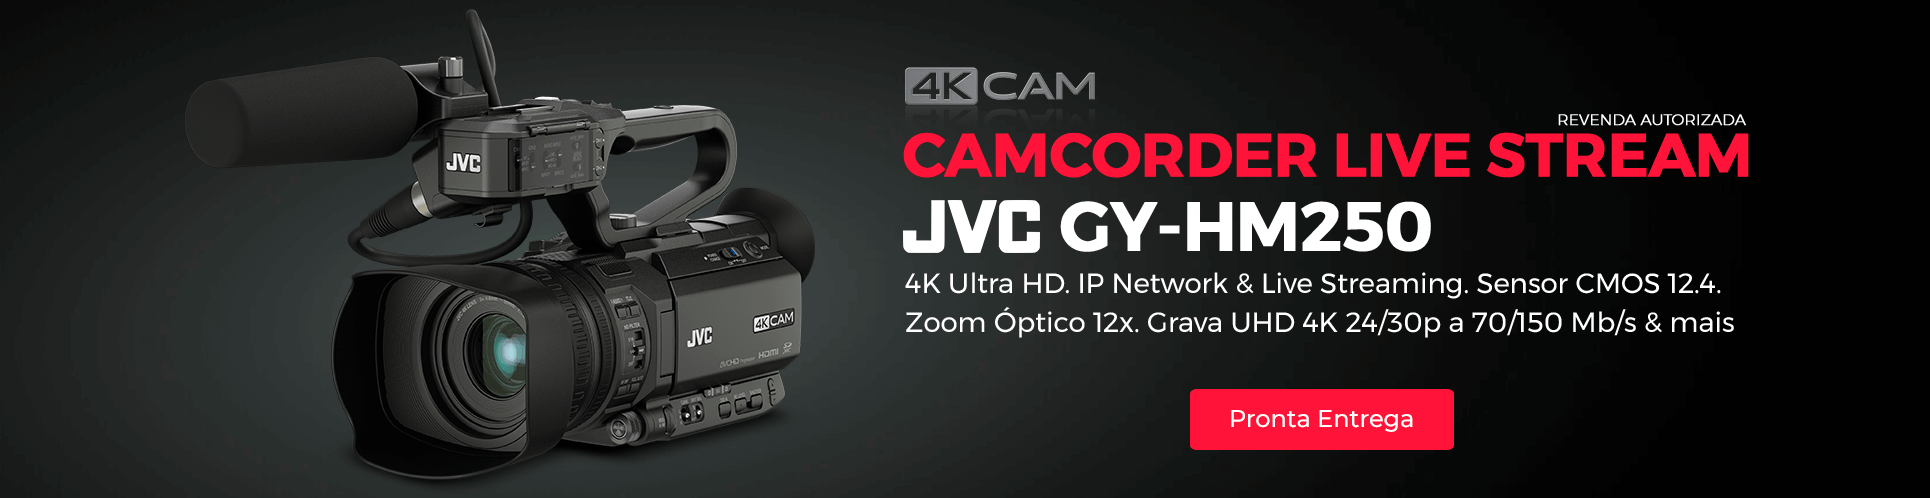 JVC GY-HM250U 4K